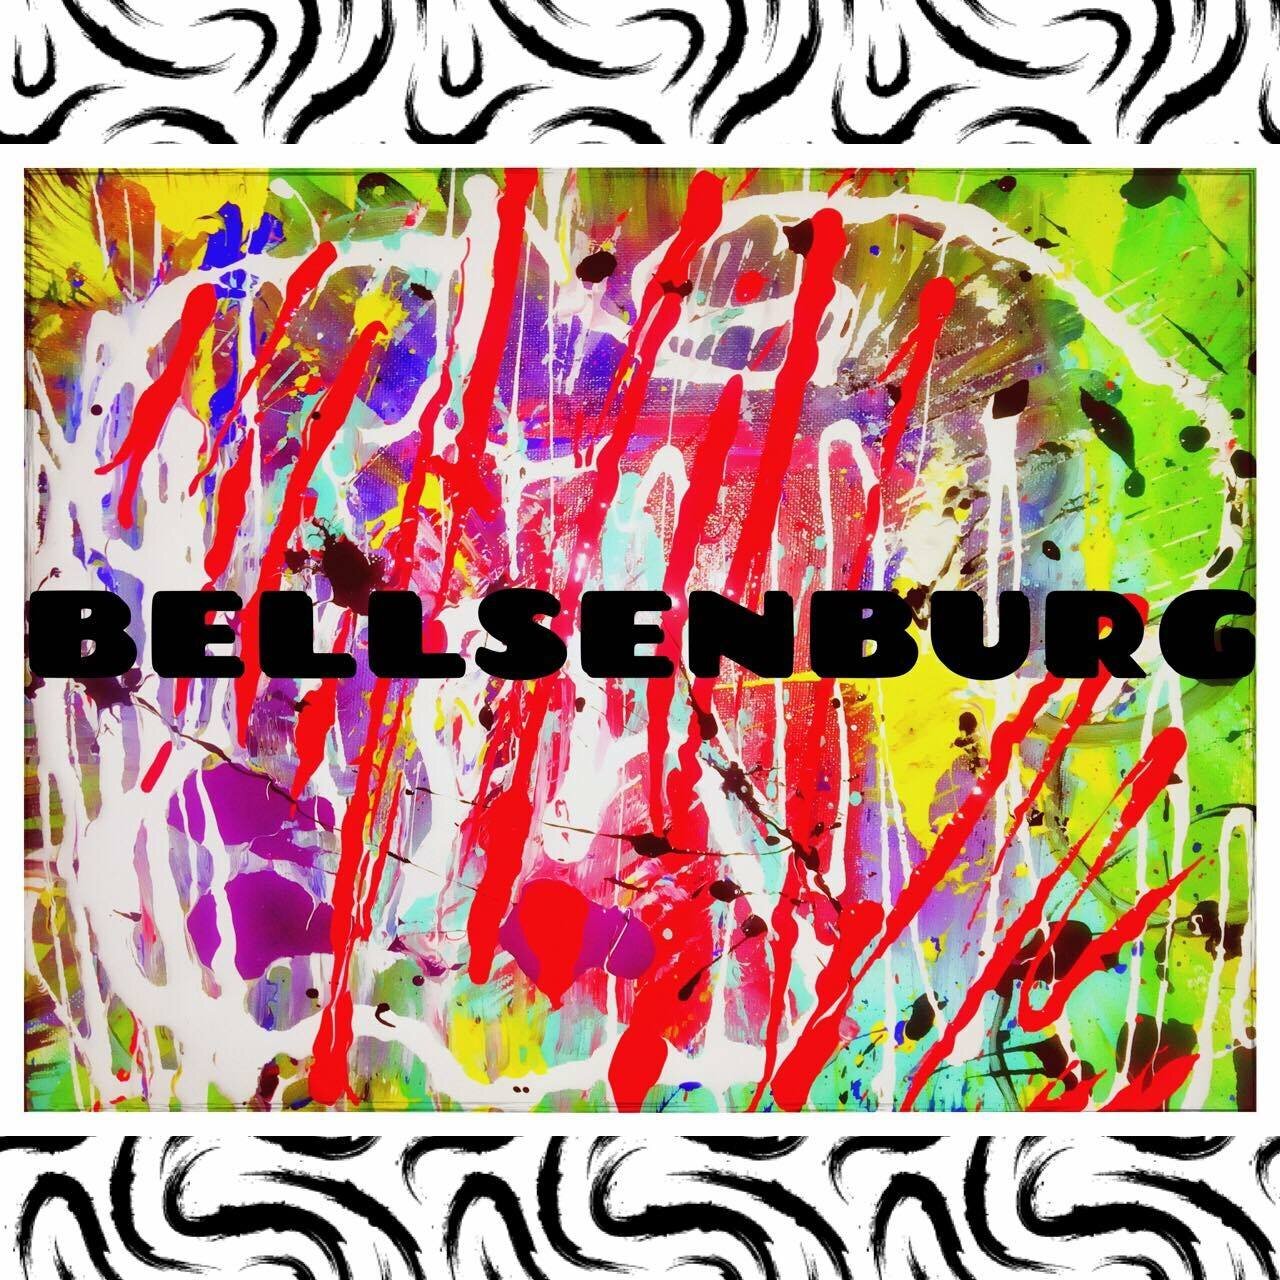 Bellsenburg Music and Arts